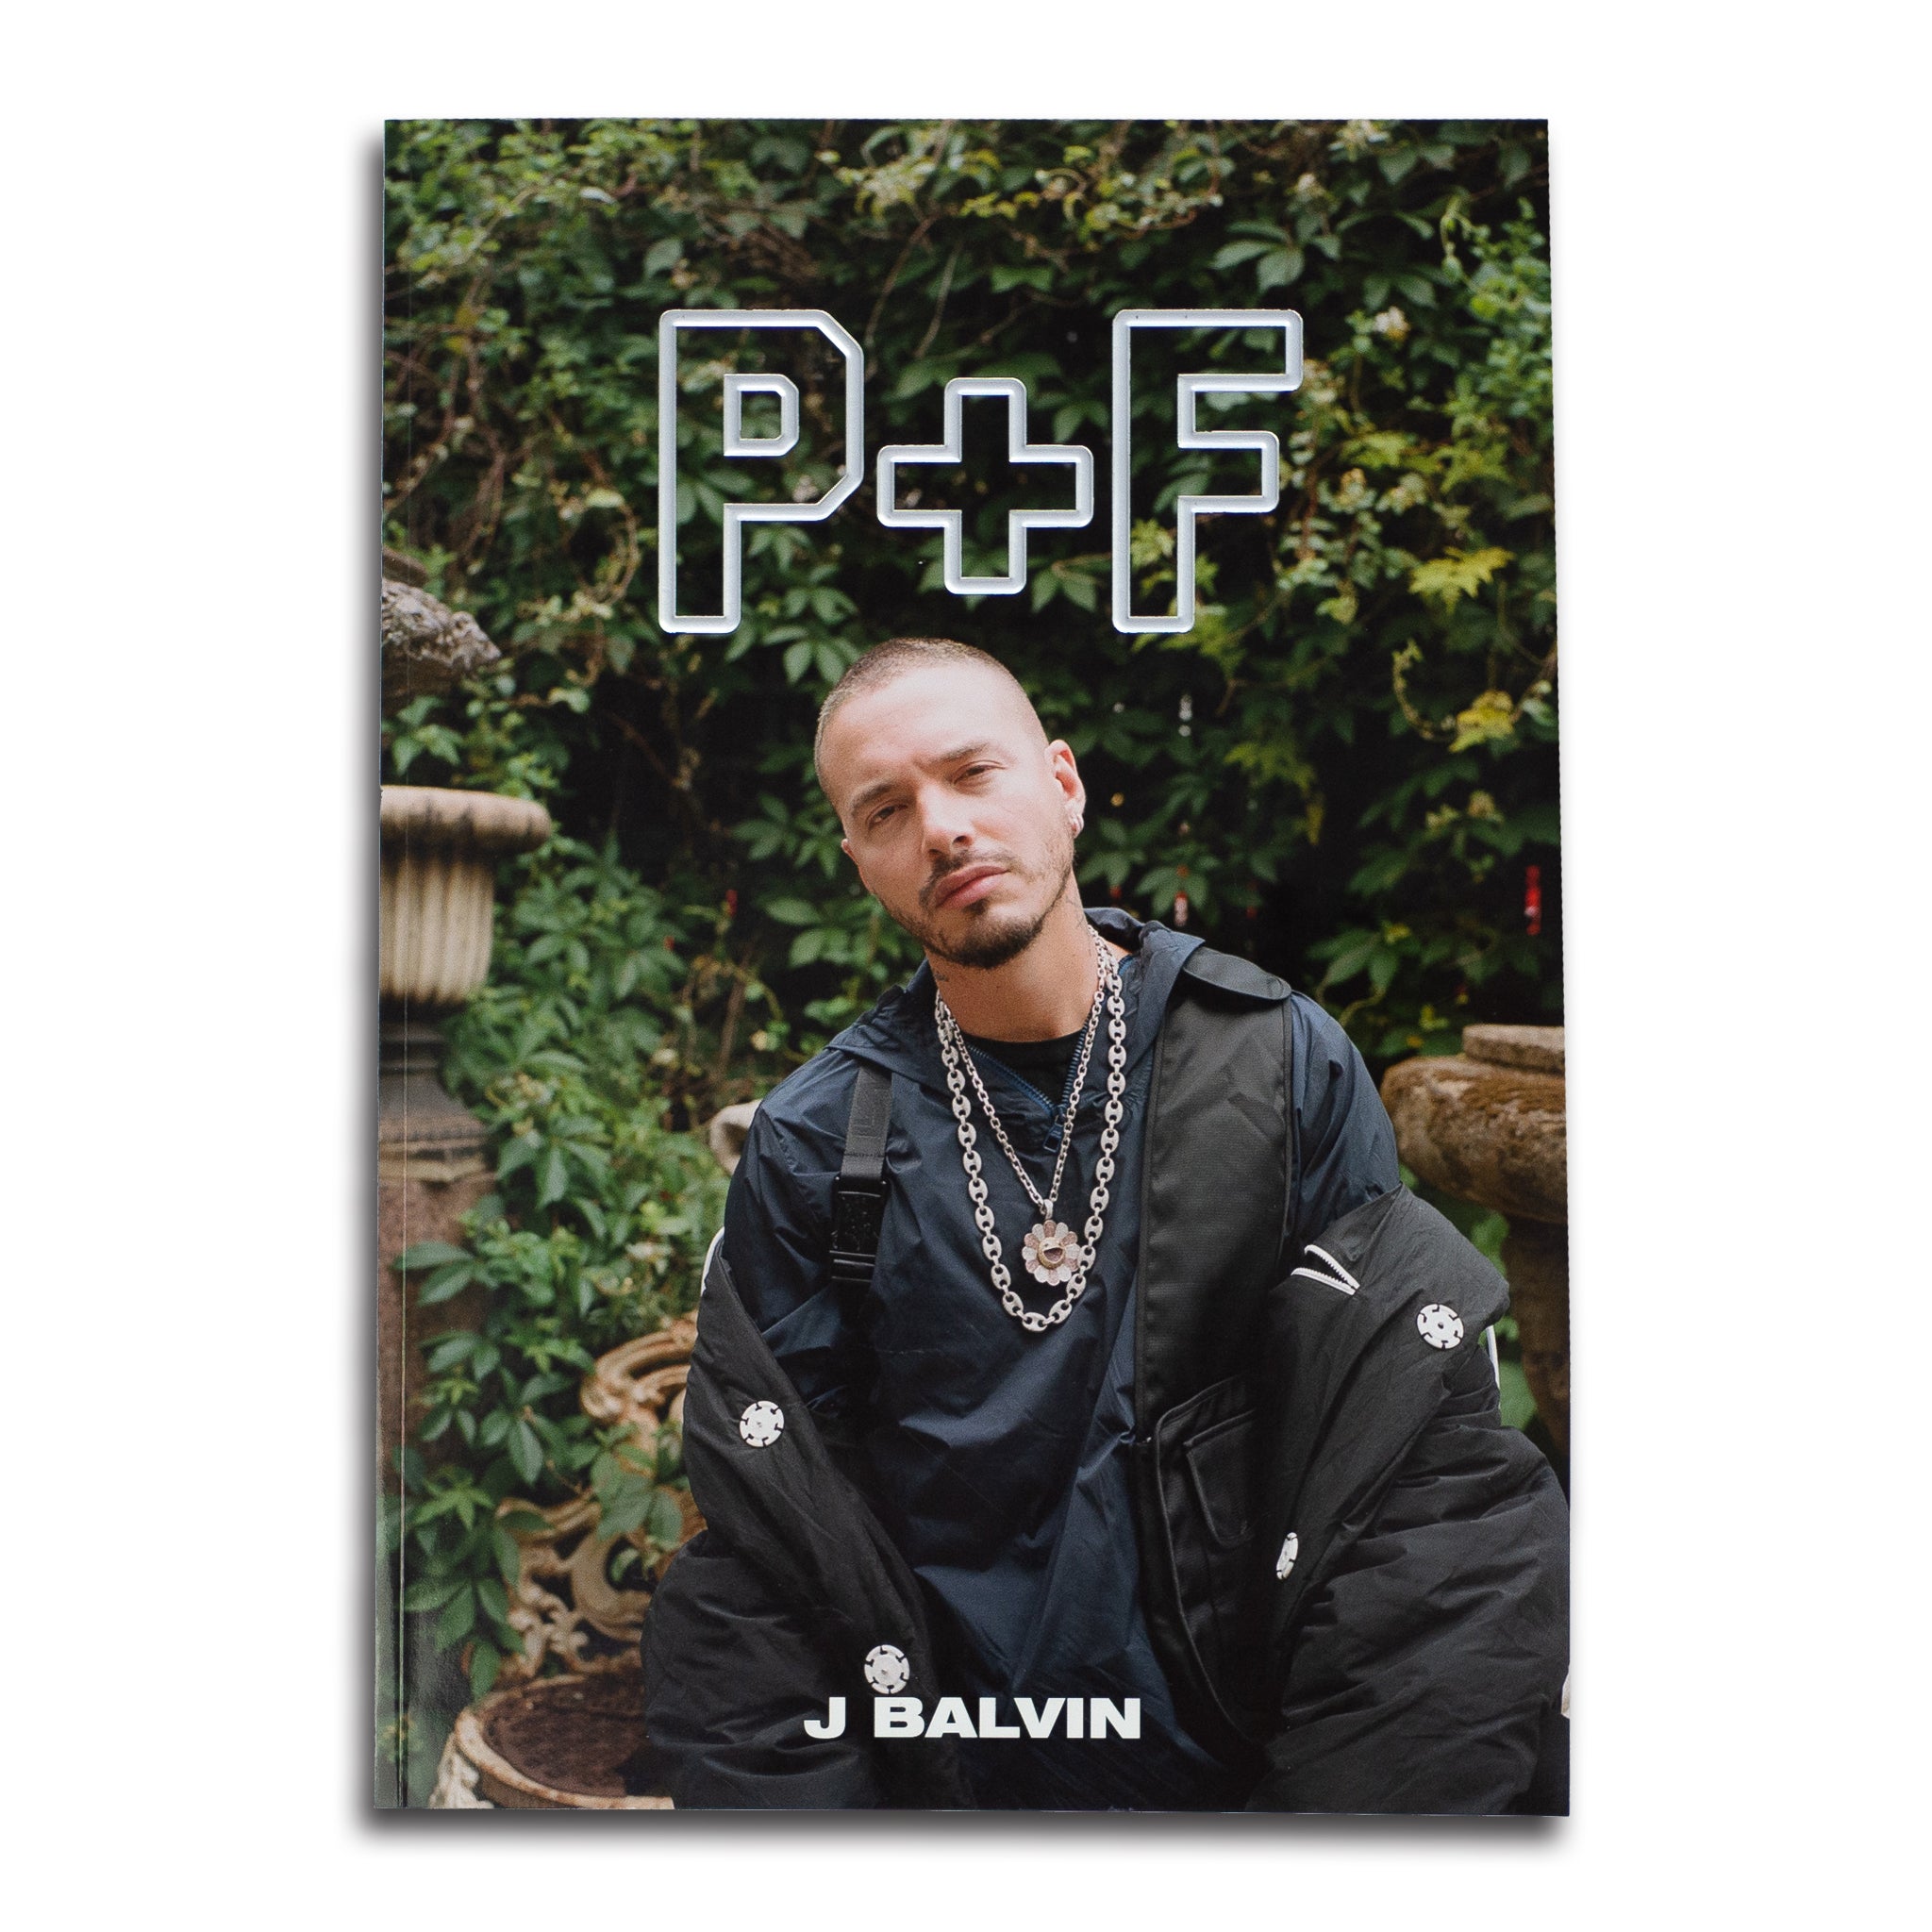 P+F MAGAZINE VOL. 4 - J BALVIN COVER